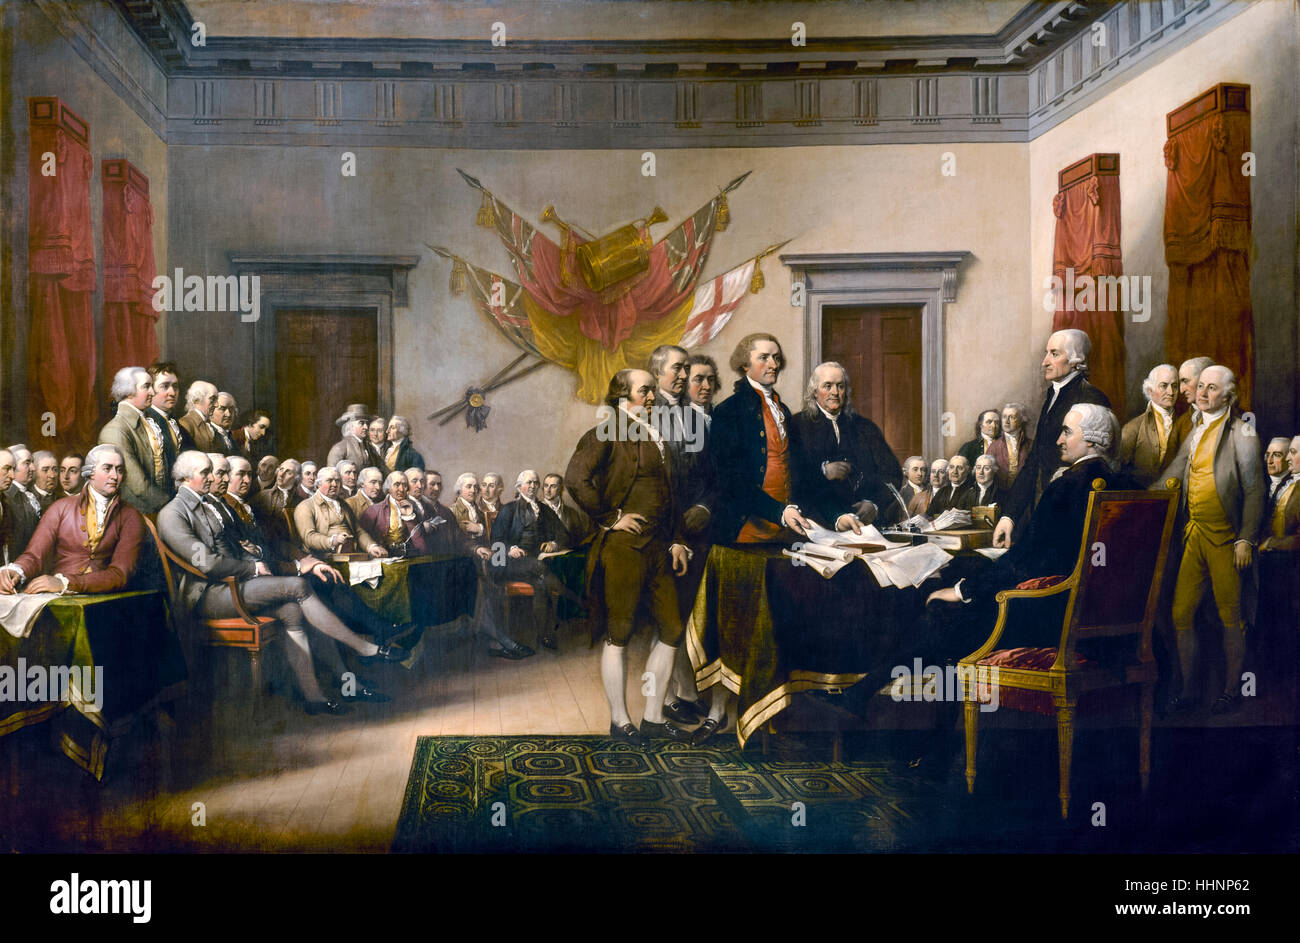 "Unabhängigkeitserklärung", 1817-Öl-Gemälde von John Trumbull (1756-1843) amerikanische Künstler berühmt für seine historischen Gemälden. Das Gemälde zeigt 42 von den 56 Unterzeichnern der Erklärung und erschien auf dem $2 Dollarschein zwischen 1862 – 1966 und Briefmarken. Siehe Beschreibung für mehr Informationen. Stockfoto